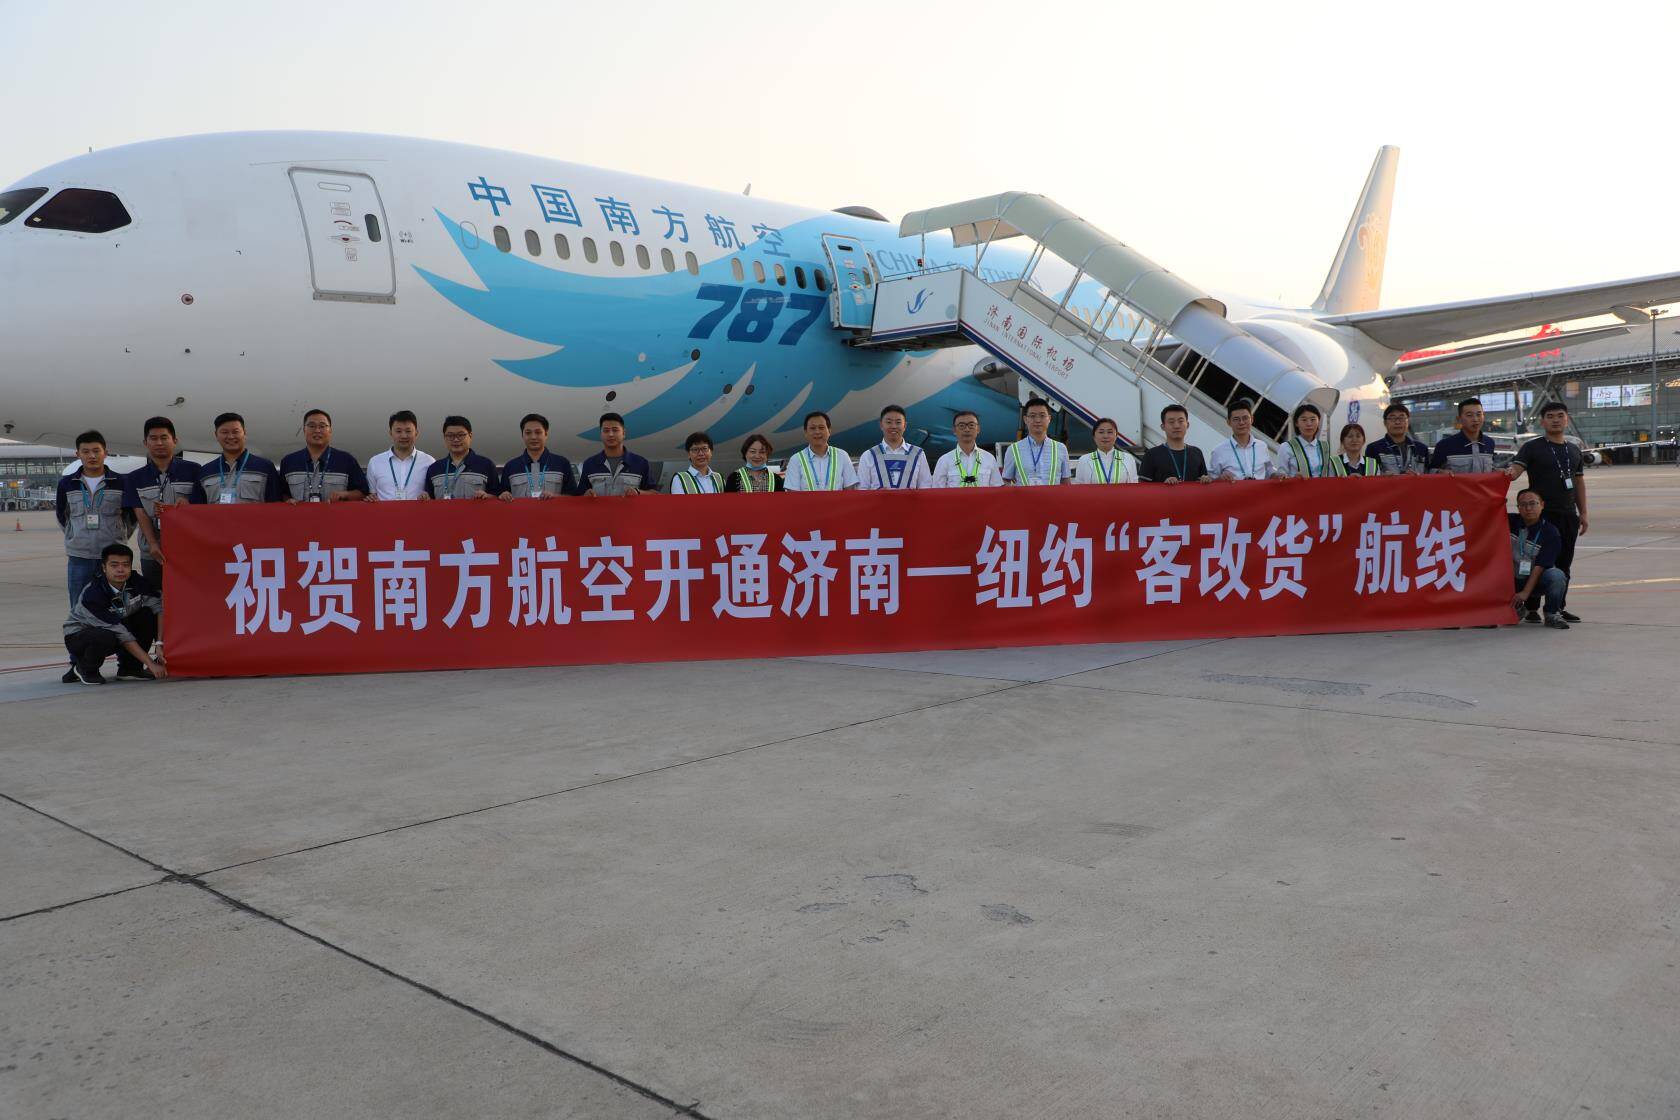 飞行14小时 济南机场最长洲际货运航线开通